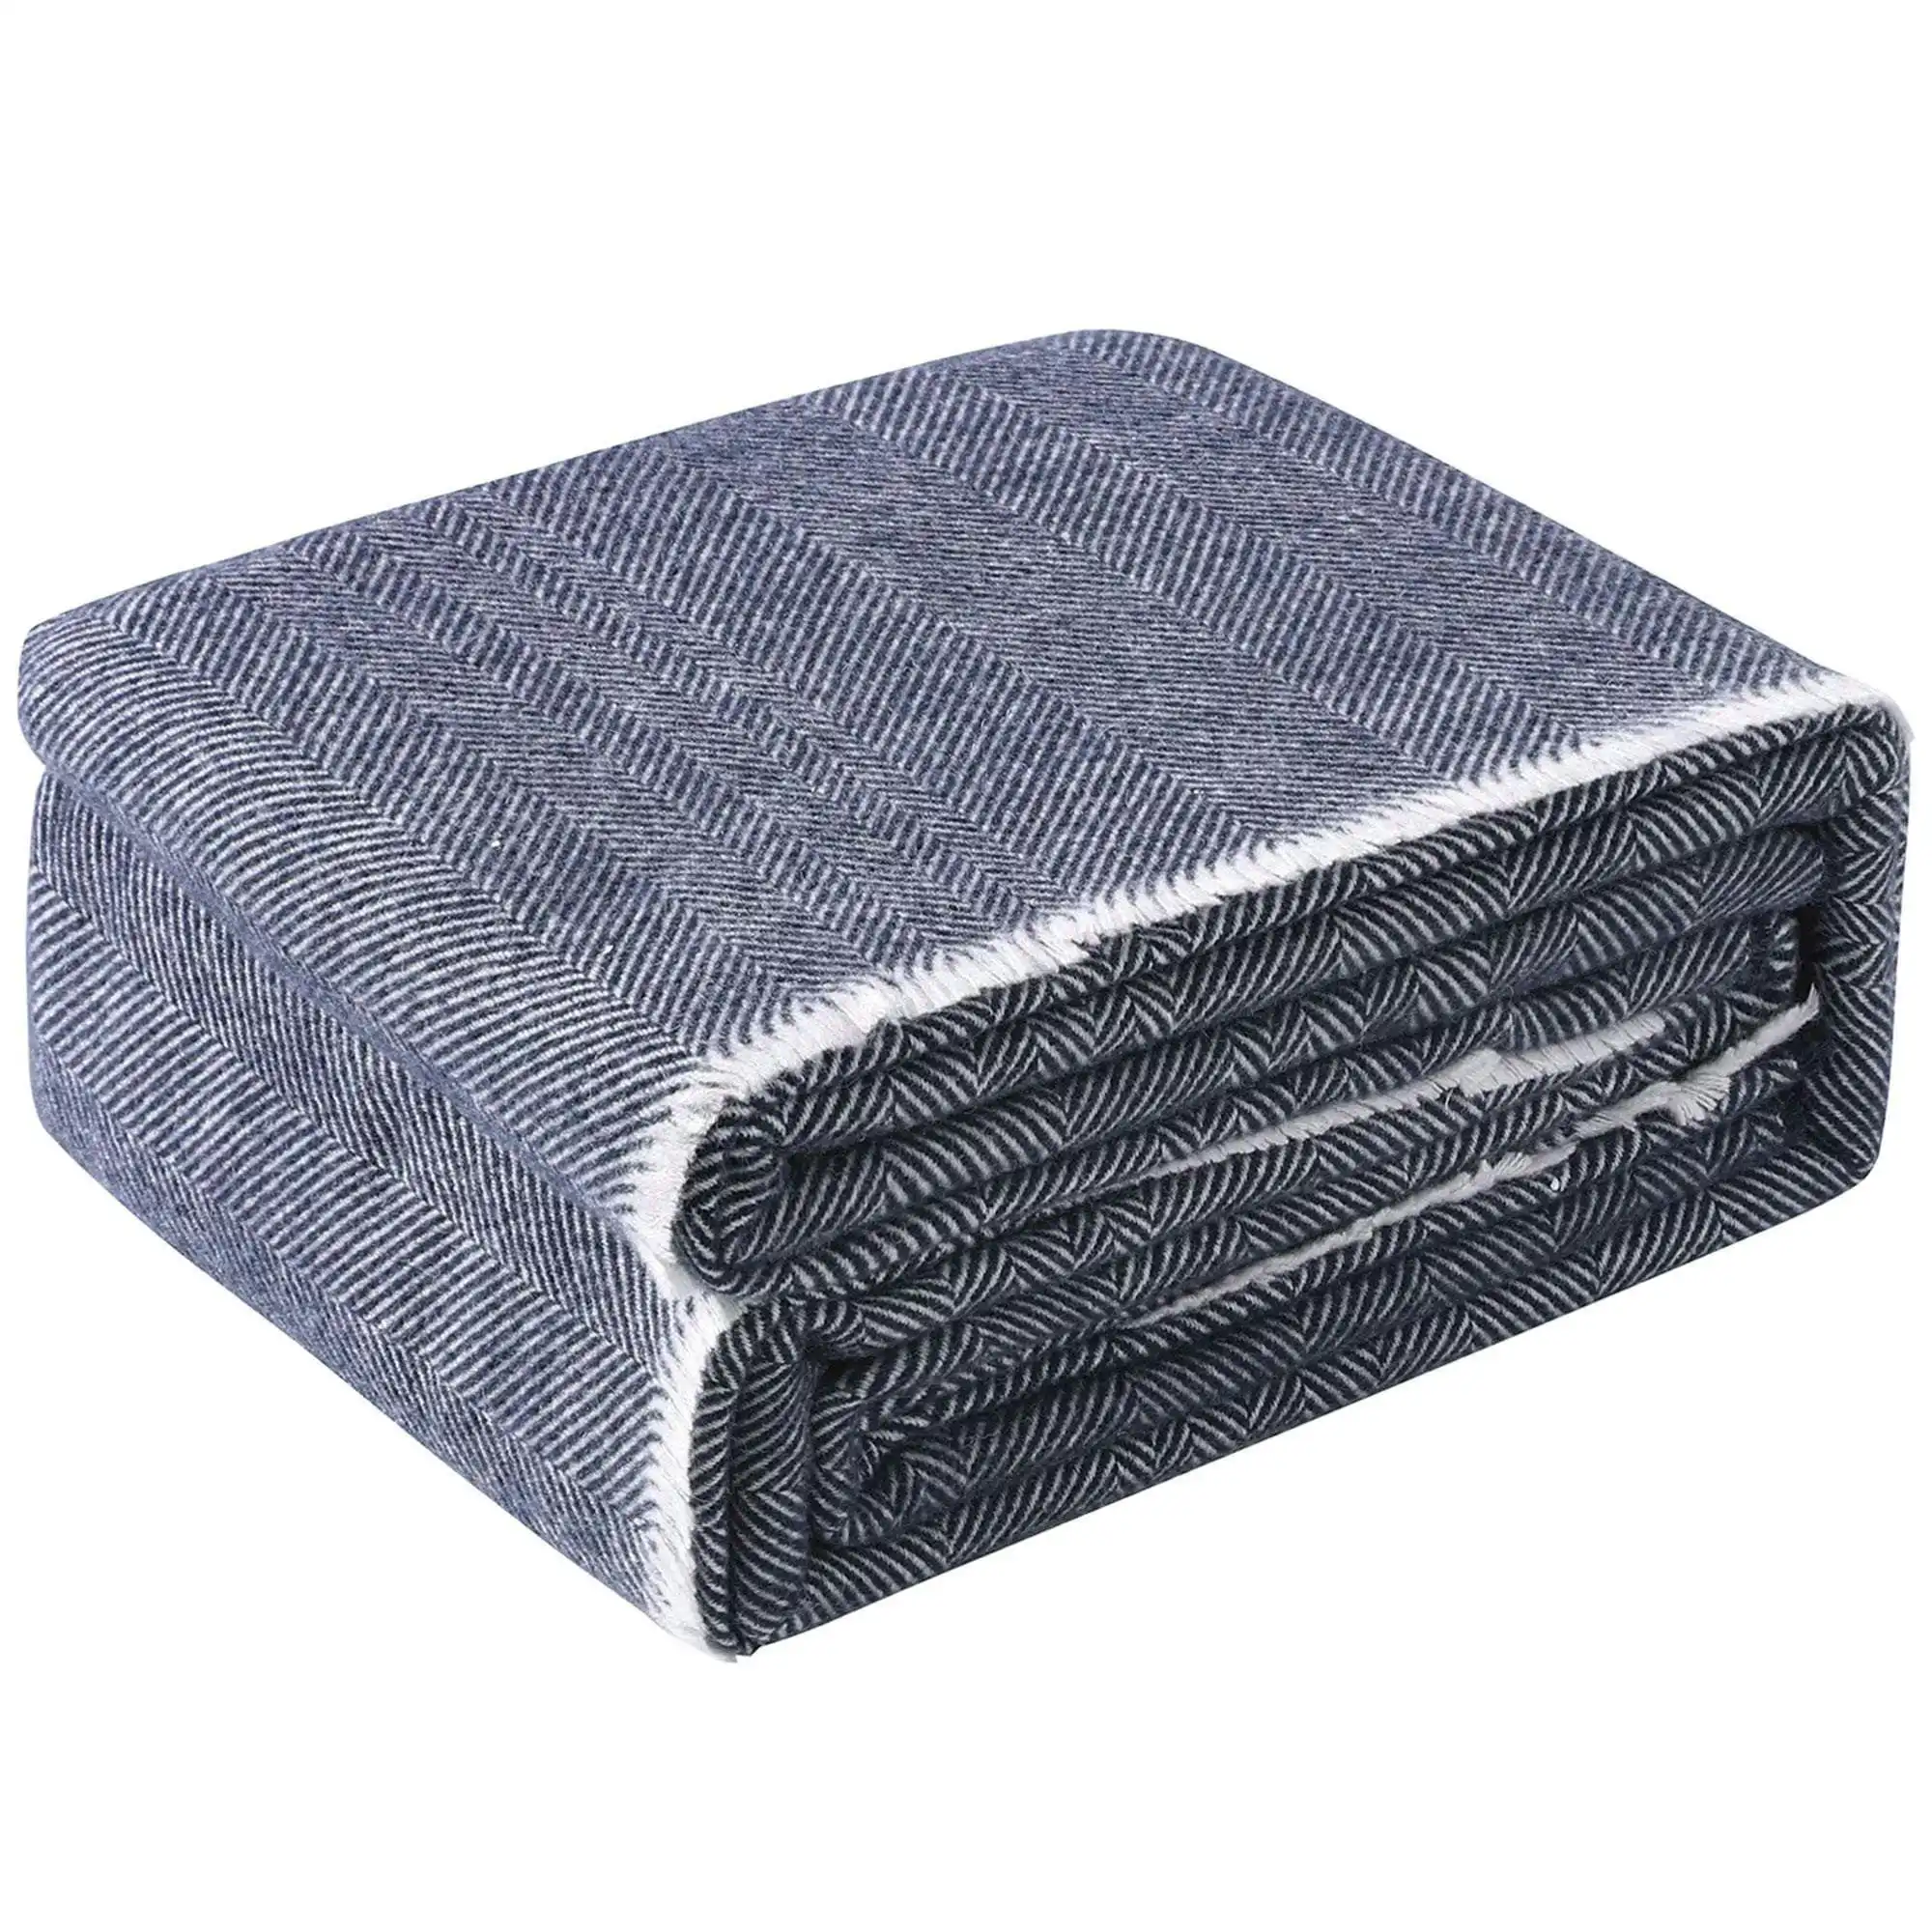 Accessorize Blue Herringbone Wool Blanket